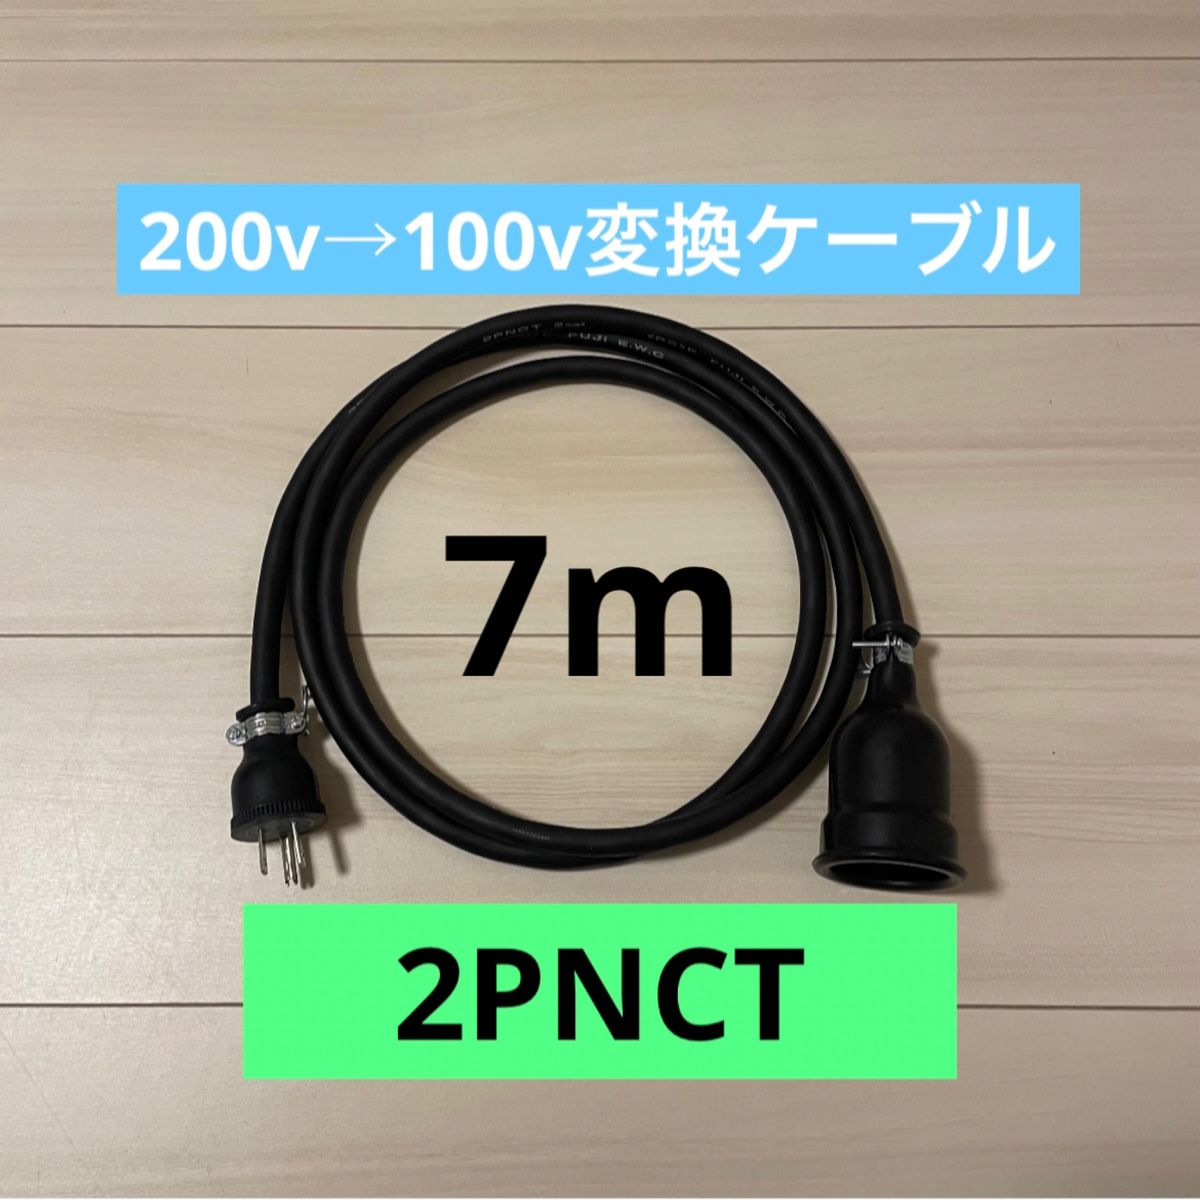 電気自動車コンセント★200V→100V変換充電器延長ケーブル7m 2PNCT